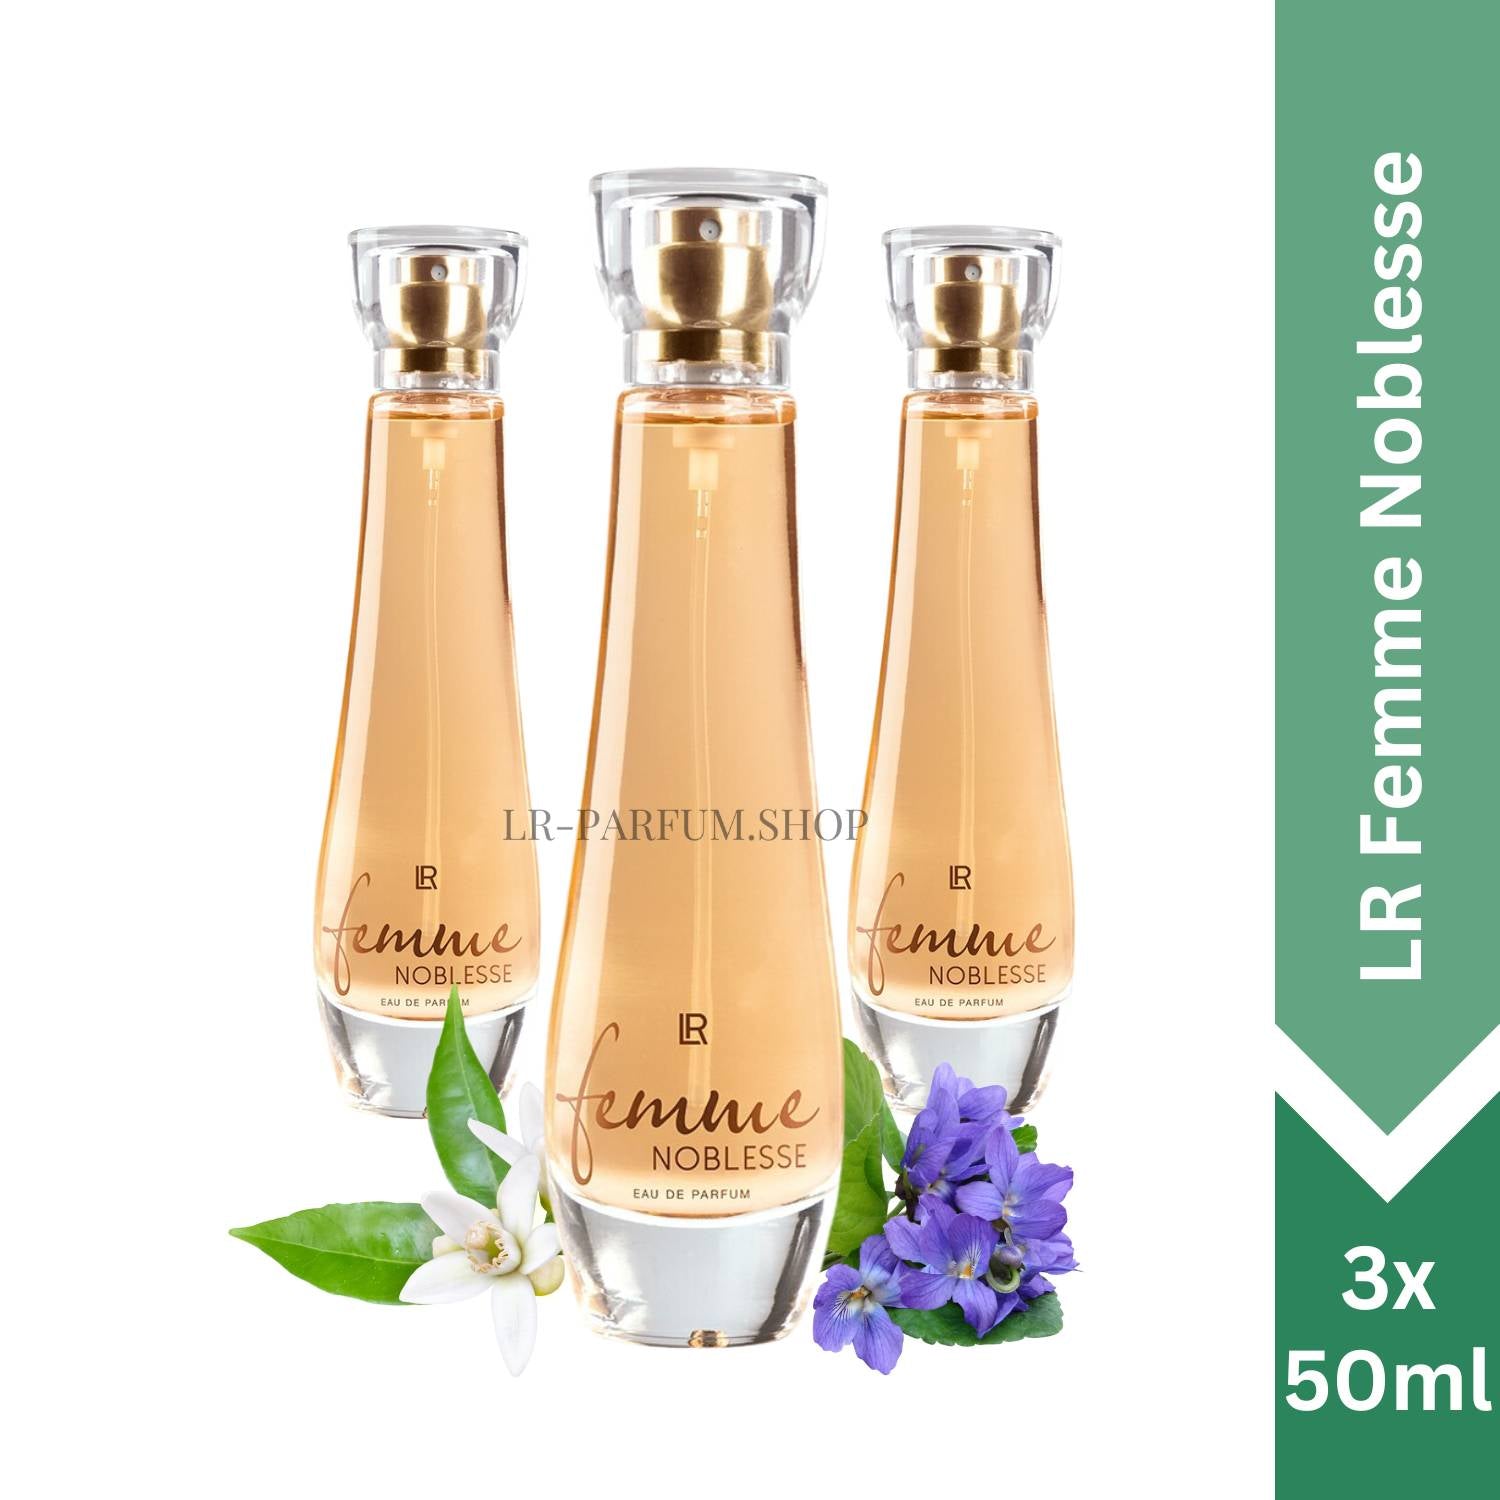 LR Femme Noblesse - Eau de Parfum, 3er Pack (3x 50ml) - LR-Parfum.shop